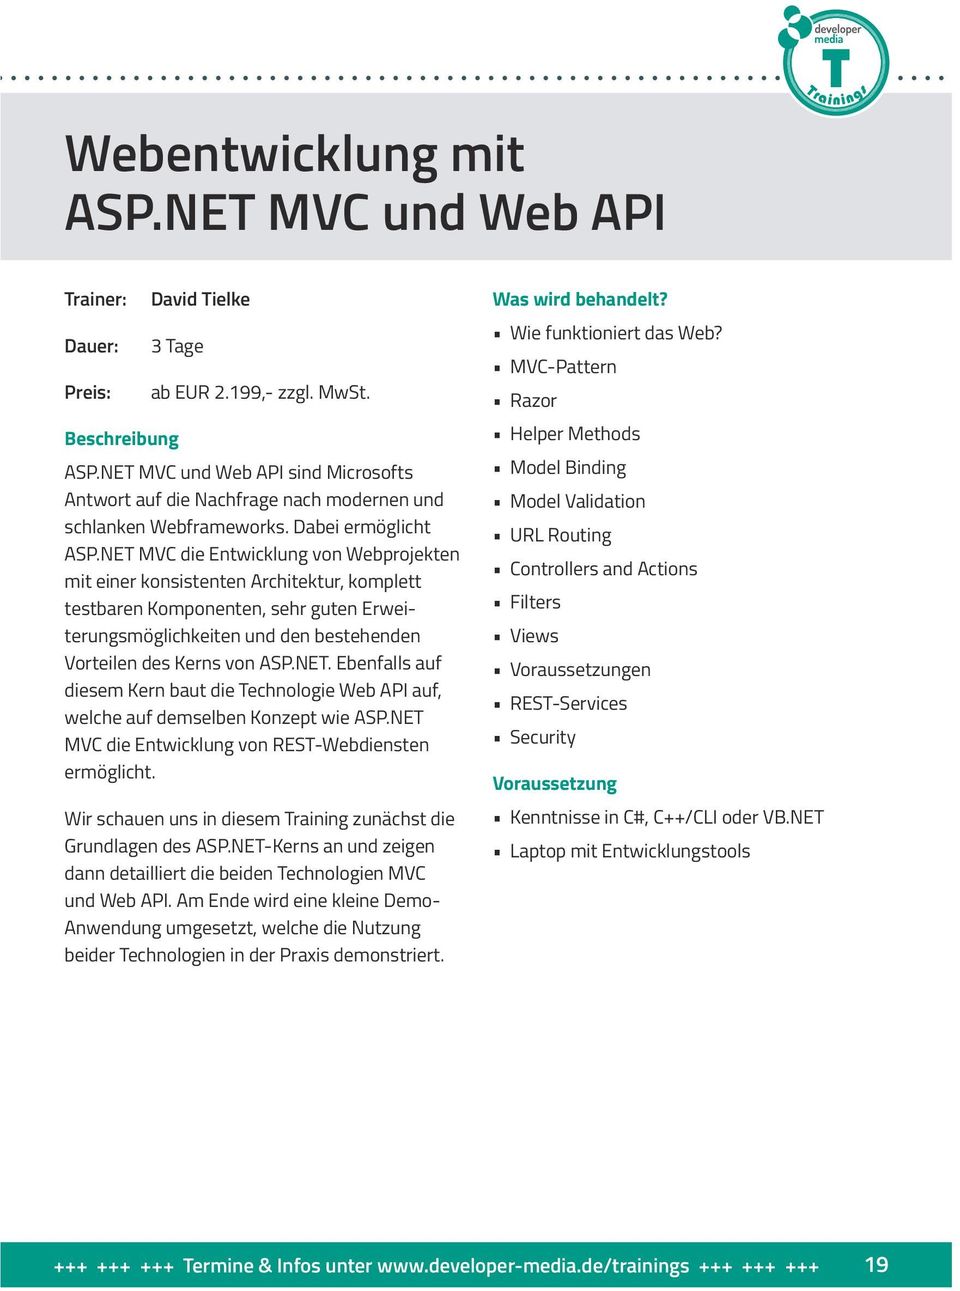 NET MVC die Entwicklung von Webprojekten mit einer konsistenten Architektur, komplett testbaren Komponenten, sehr guten Erweiterungsmöglichkeiten und den bestehenden Vorteilen des Kerns von ASP.NET. Ebenfalls auf diesem Kern baut die Technologie Web API auf, welche auf demselben Konzept wie ASP.